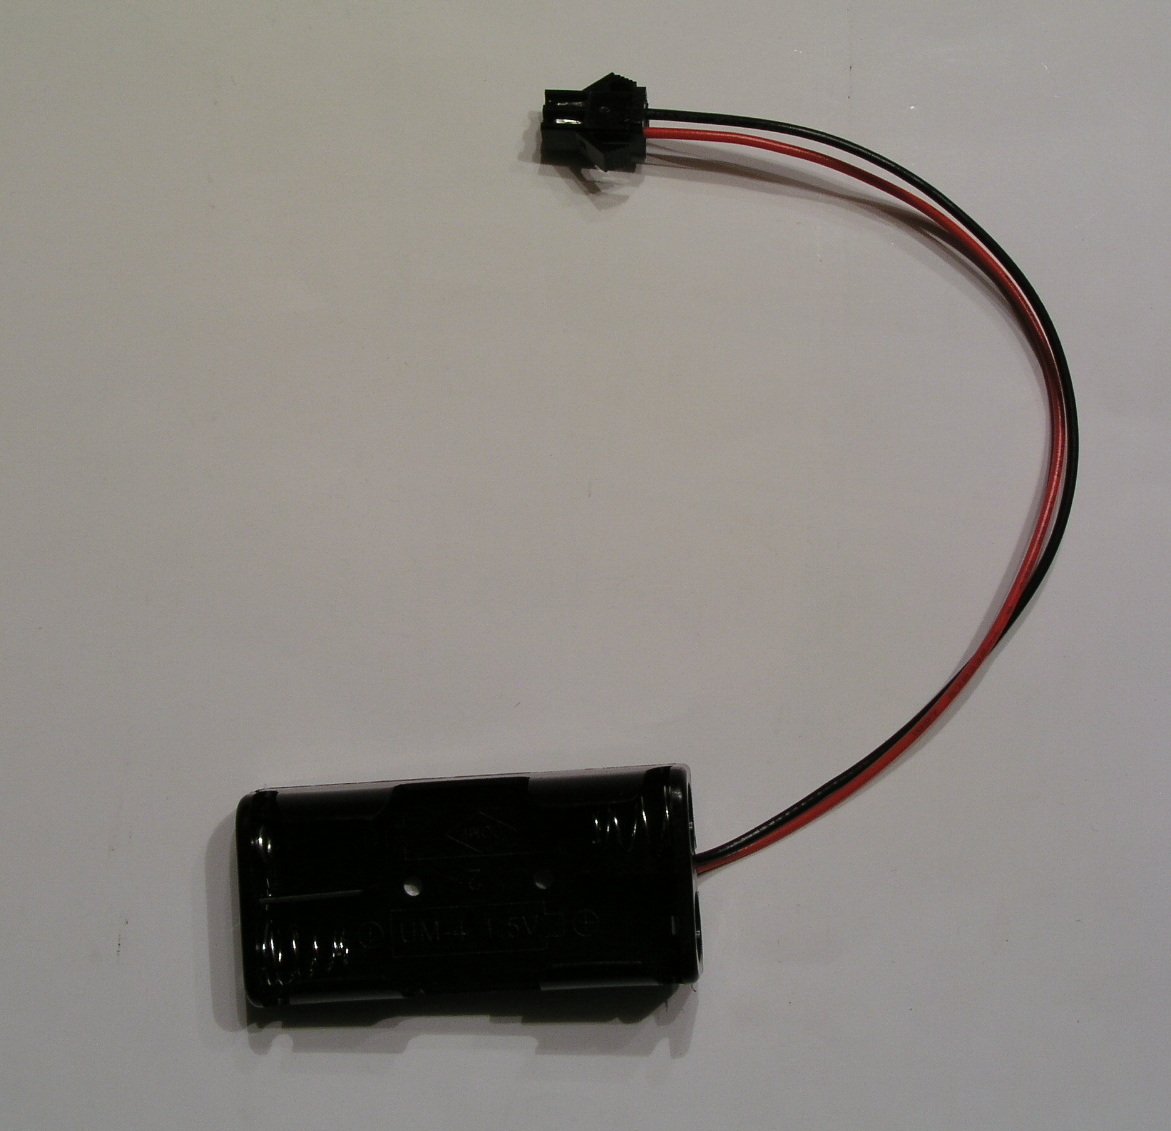 LED合図灯ST-1A型改造用キット充電式を単4電池仕様に5分で改造 ゆうパケットmini送料込み_発送する全てです、これ以外はありません。